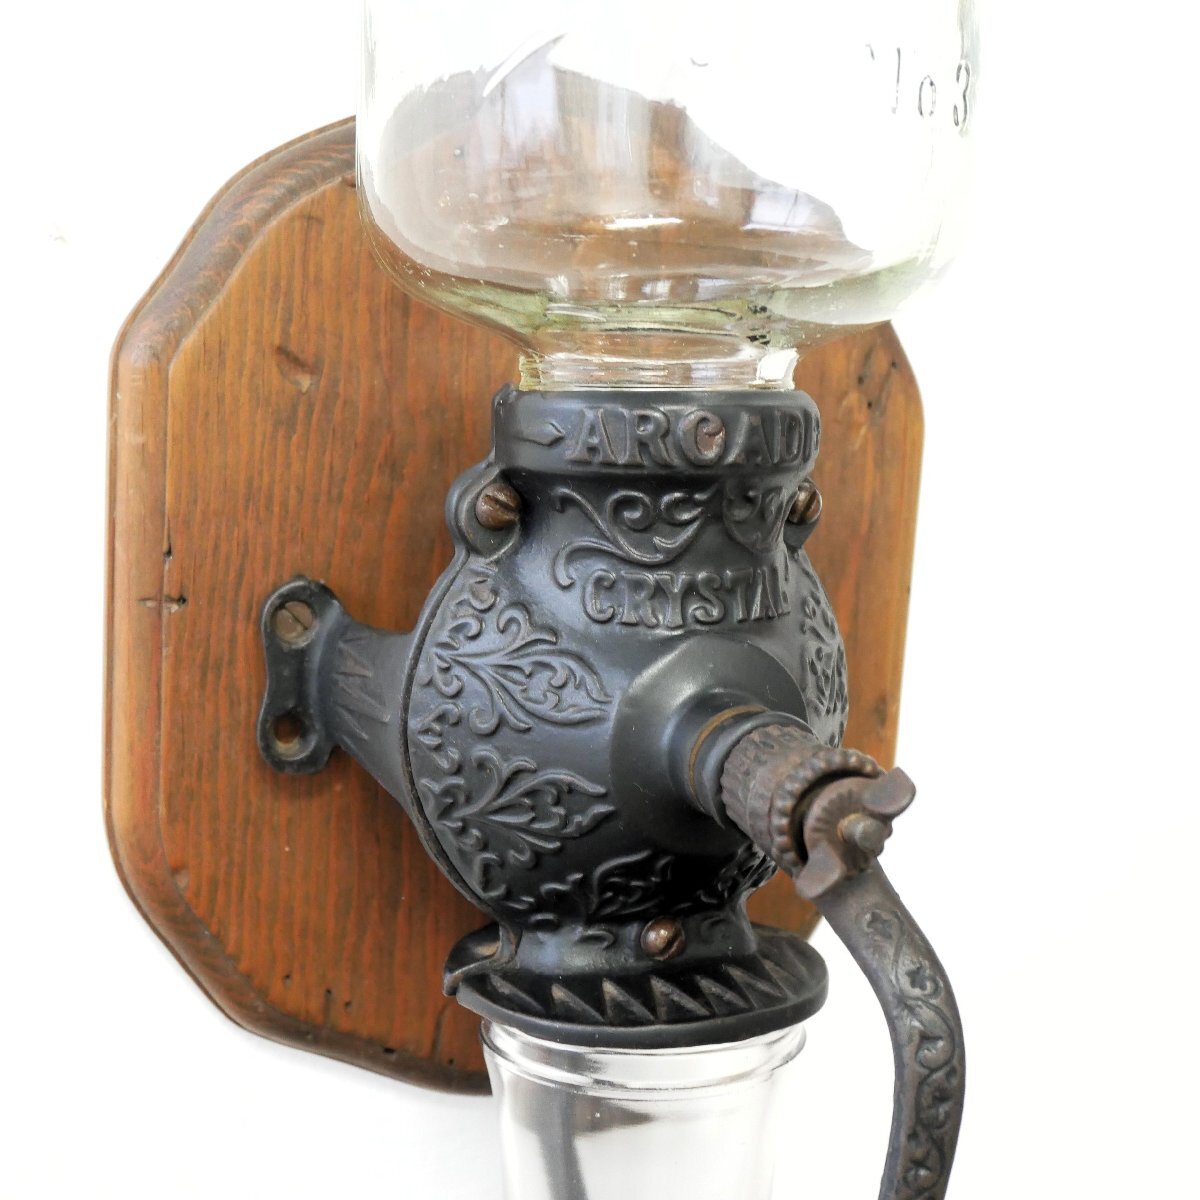 1900's アメリカ アンティーク コーヒーグラインダー Crystal No3 / ミル カフェ ディスプレイ小物 キッチン雑貨 #506-62-811_画像5